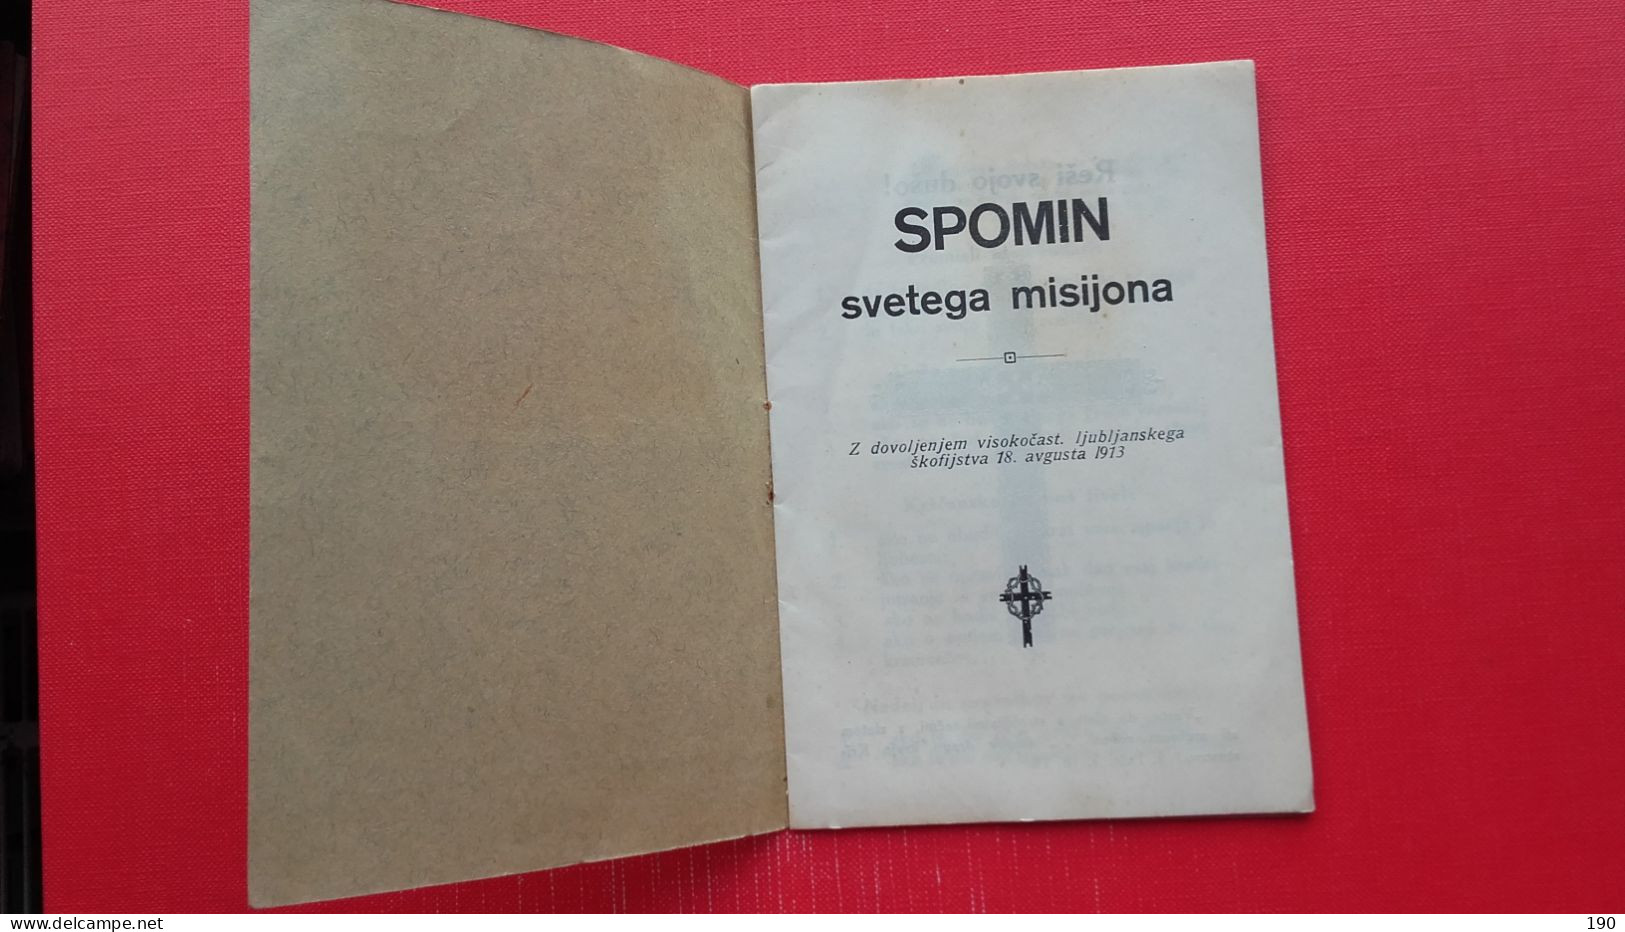 Spomin Svetega Misijona - Slav Languages